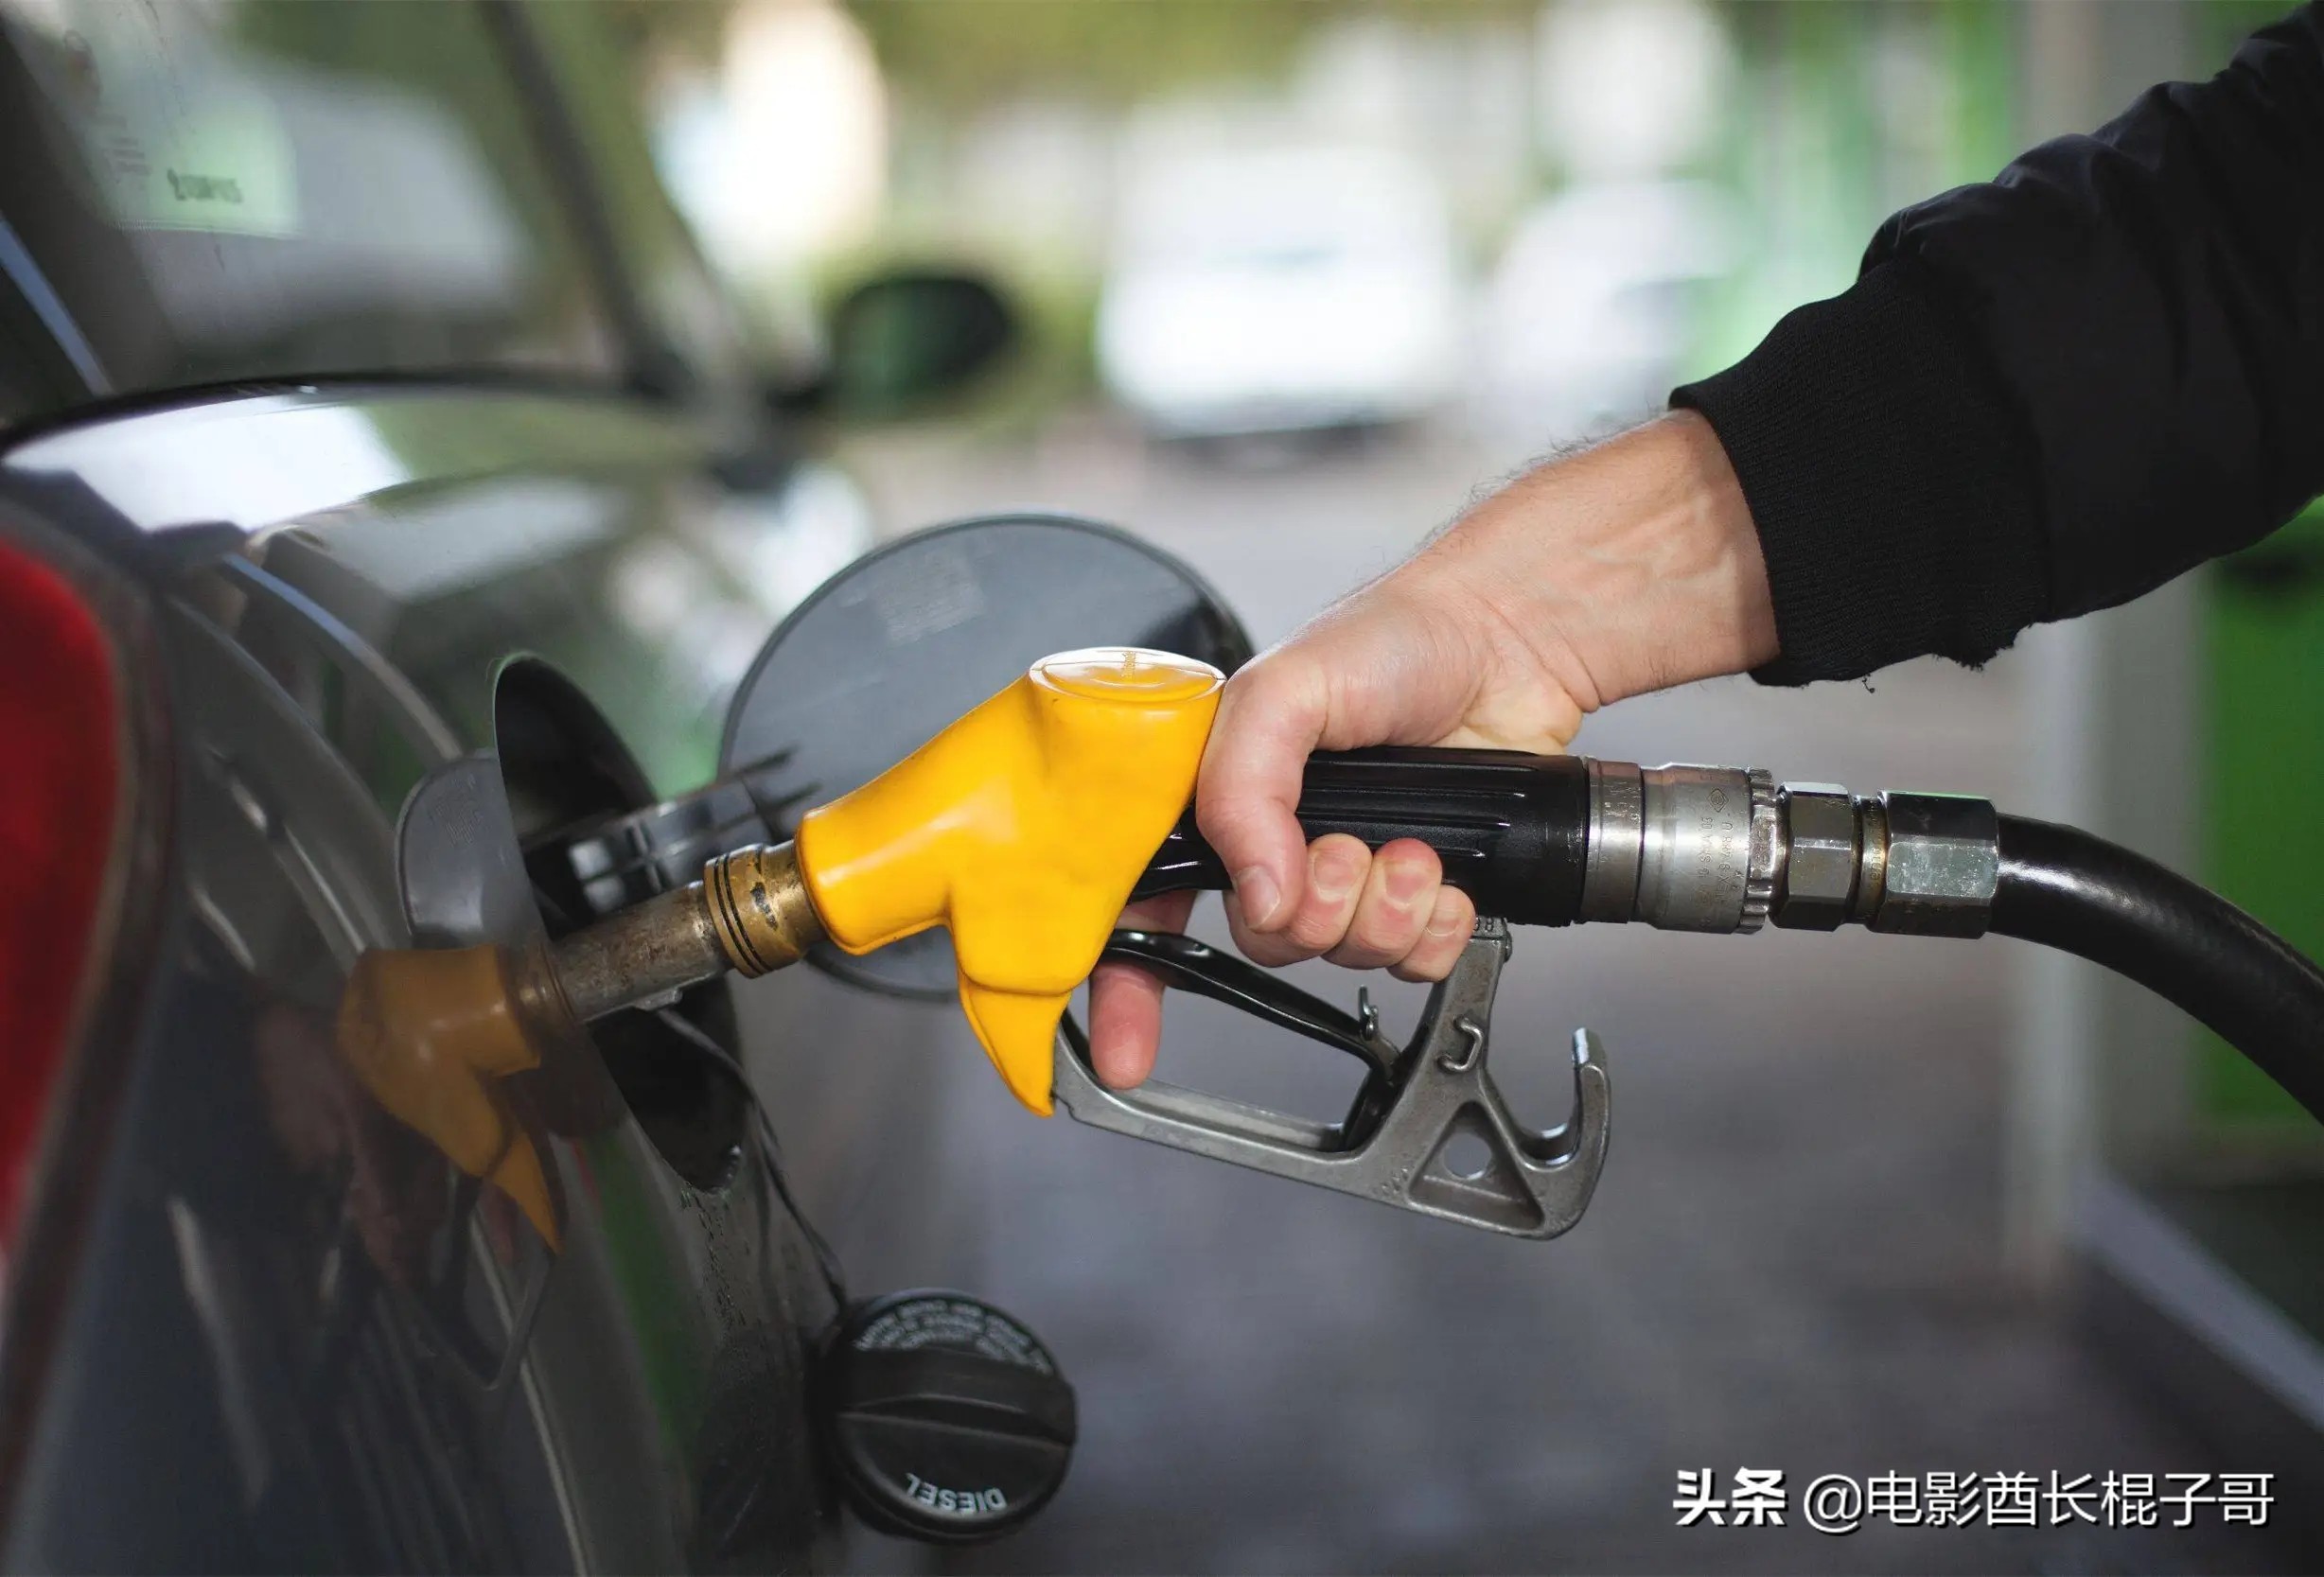 美国油价涨至人民币7元每升，部分州准备发加油补贴